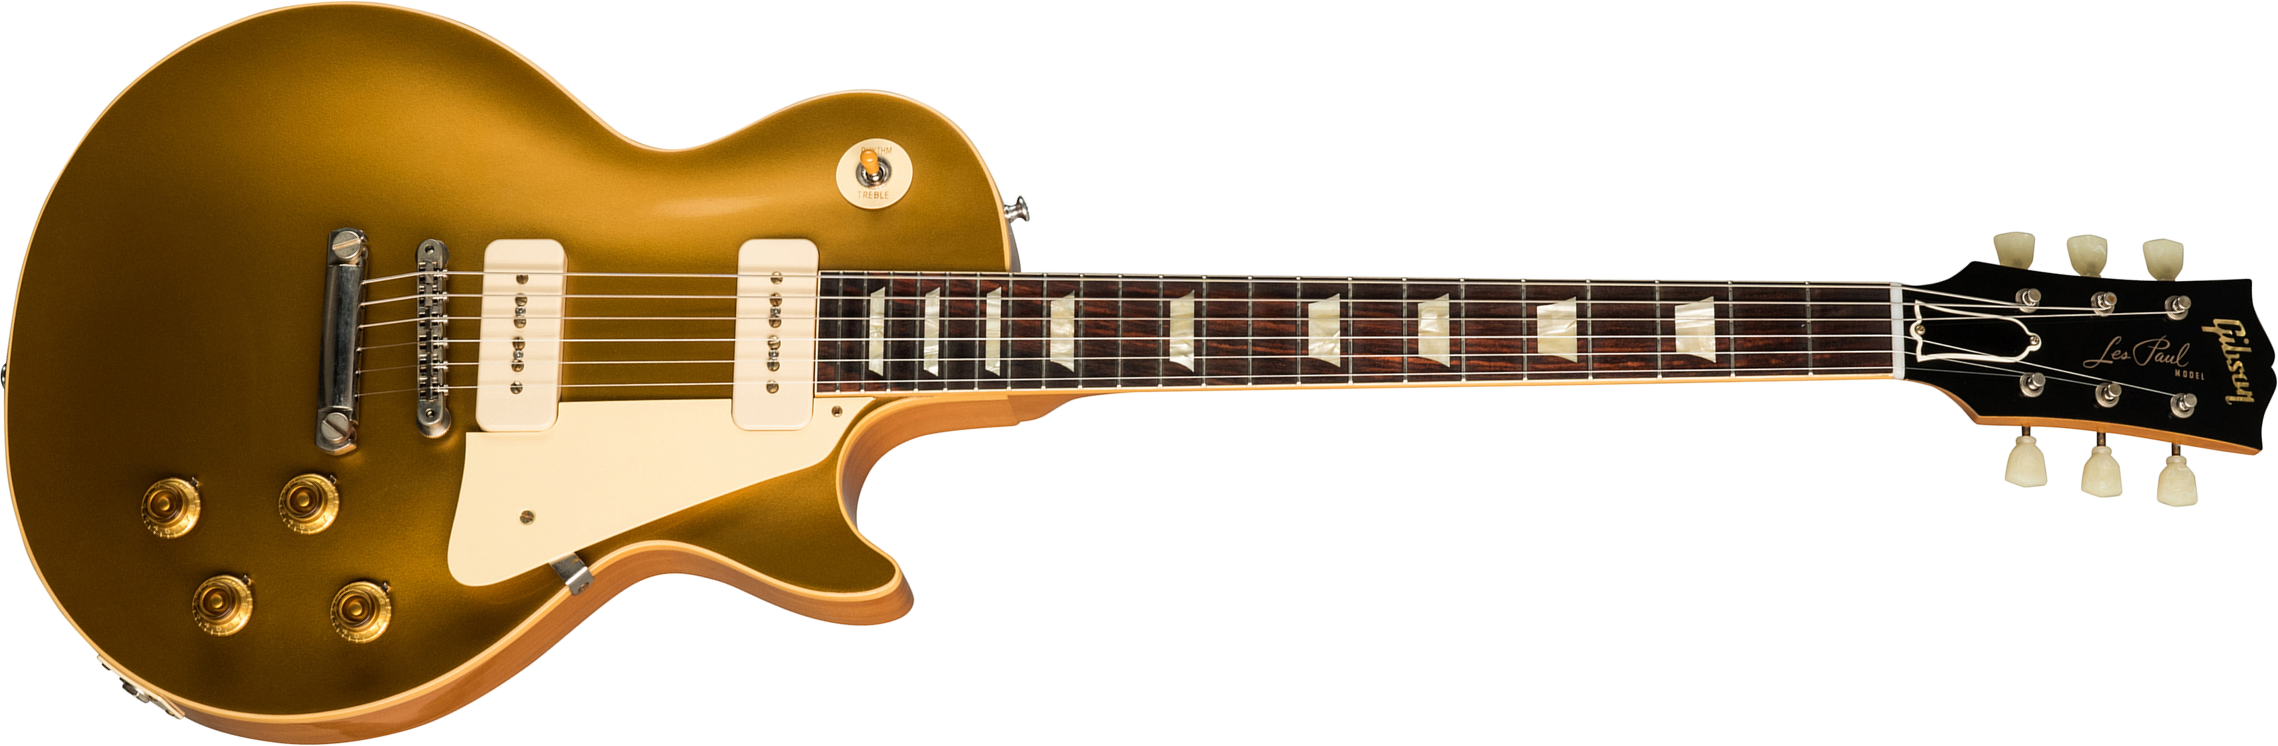 Gibson Custom Shop Les Paul Goldtop 1956 Reissue 2019 2p90 Ht Rw - Vos Double Gold - Single-Cut-E-Gitarre - Main picture